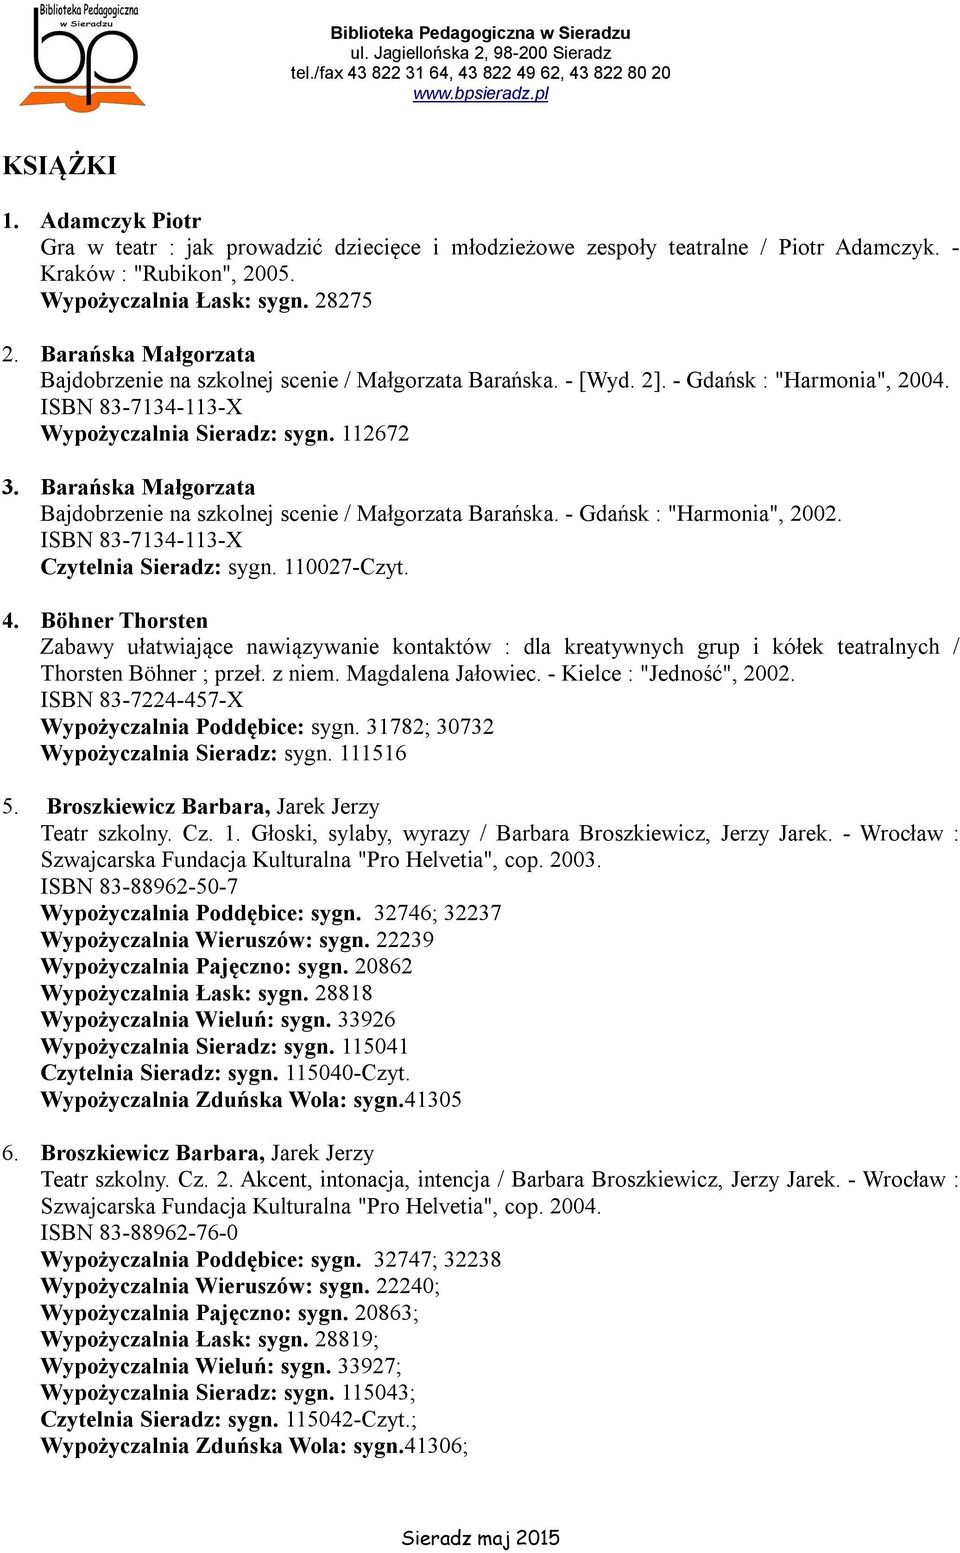 Barańska Małgorzata Bajdobrzenie na szkolnej scenie / Małgorzata Barańska. - Gdańsk : "Harmonia", 2002. ISBN 83-7134-113-X Czytelnia Sieradz: sygn. 110027-Czyt. 4.